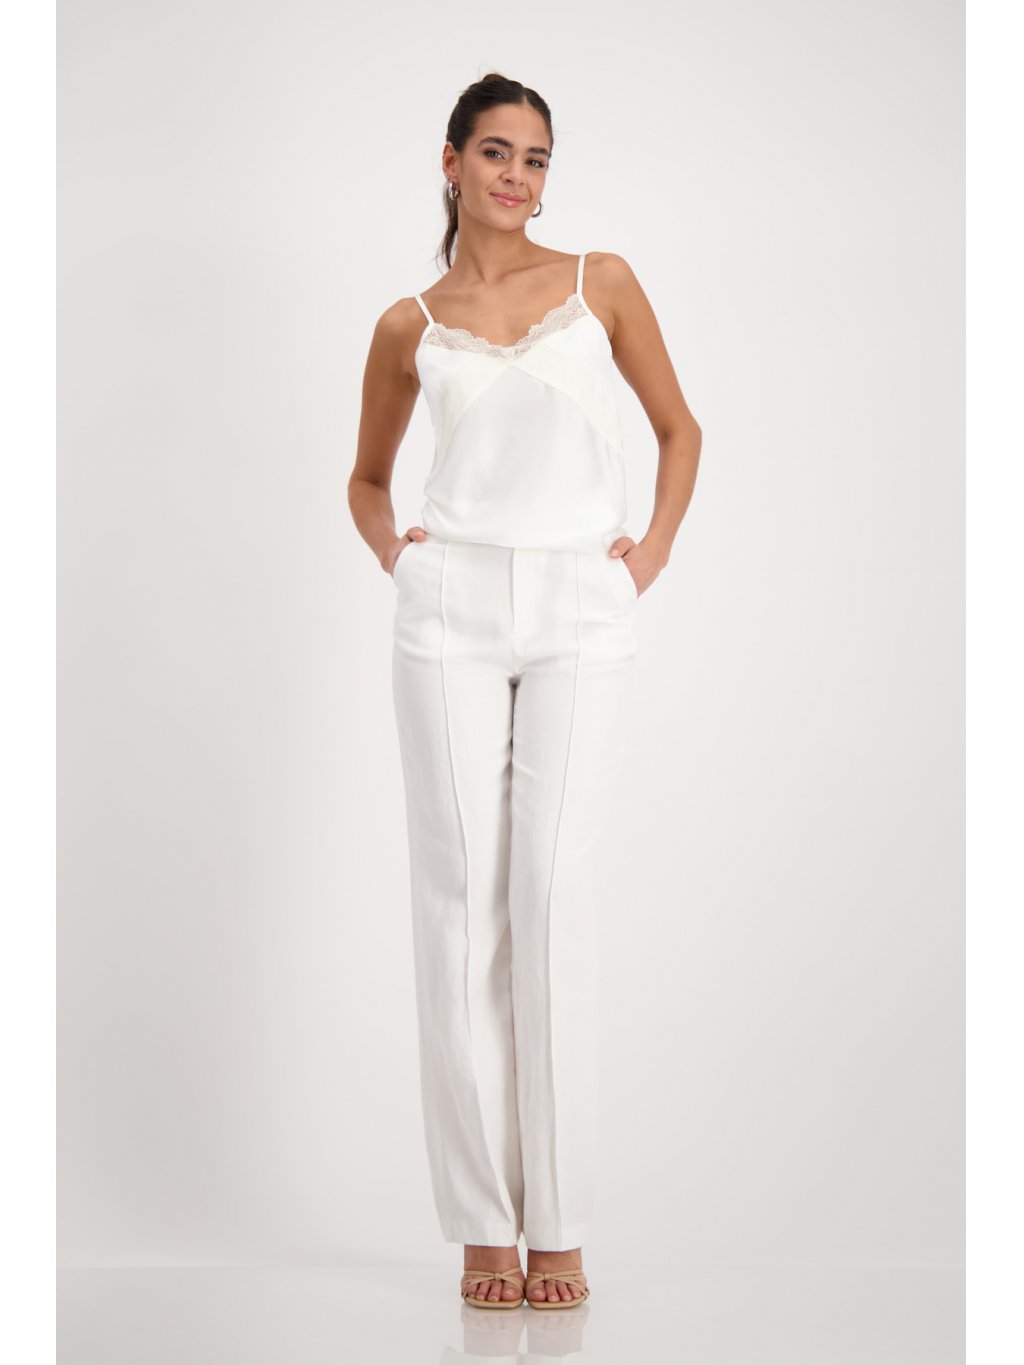 Kalhoty Monari 8581 bílé rovného střihu 